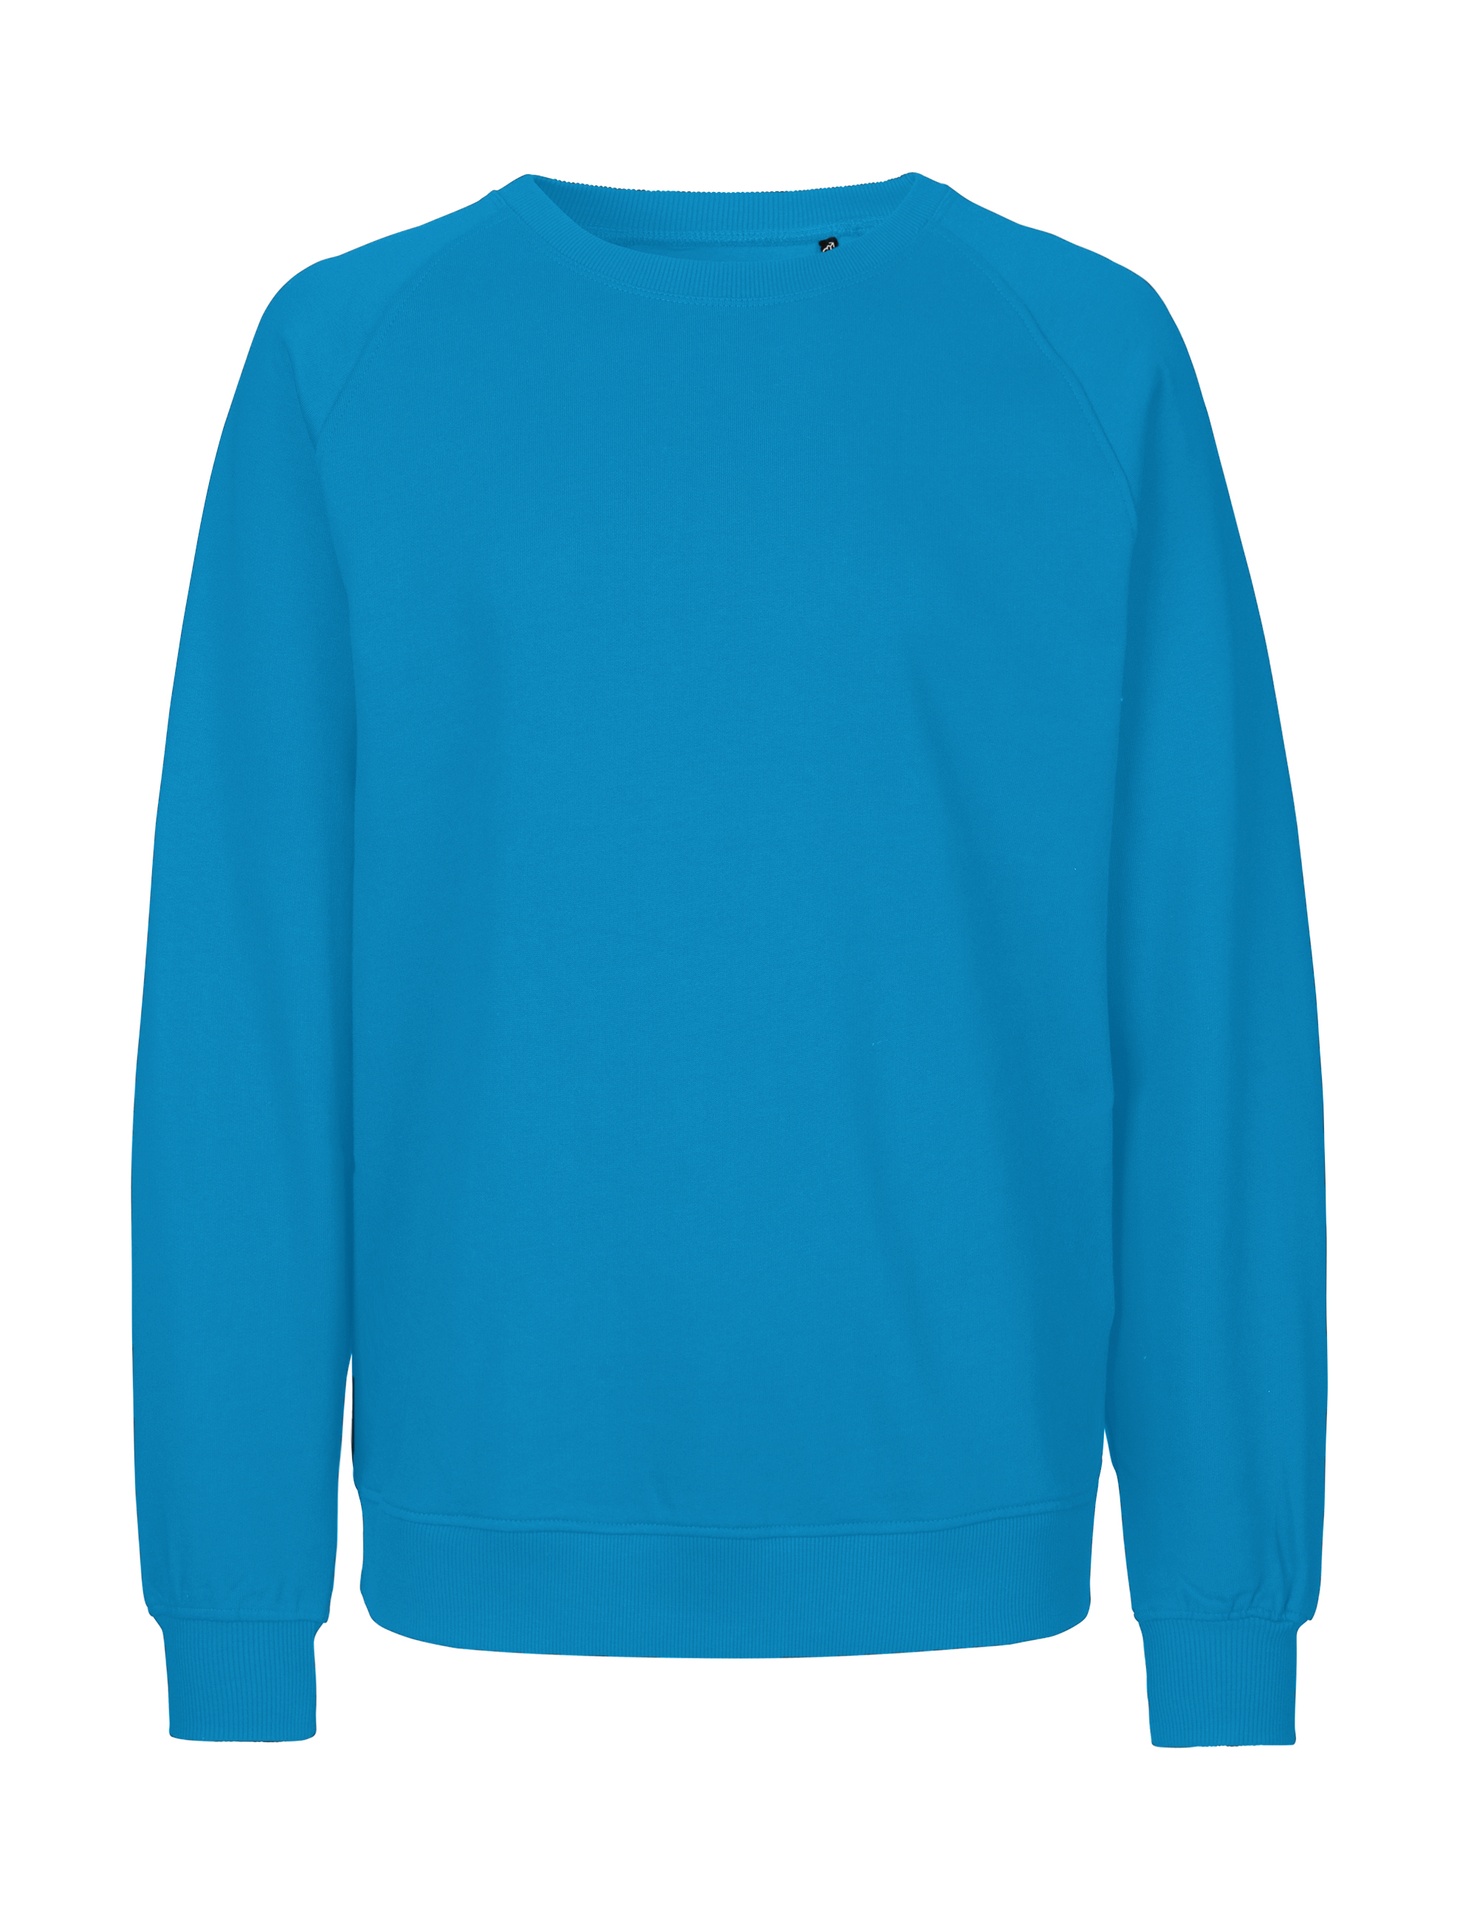 [PR/02773] Unisex Sweatshirt (Sapphire 27, XL)